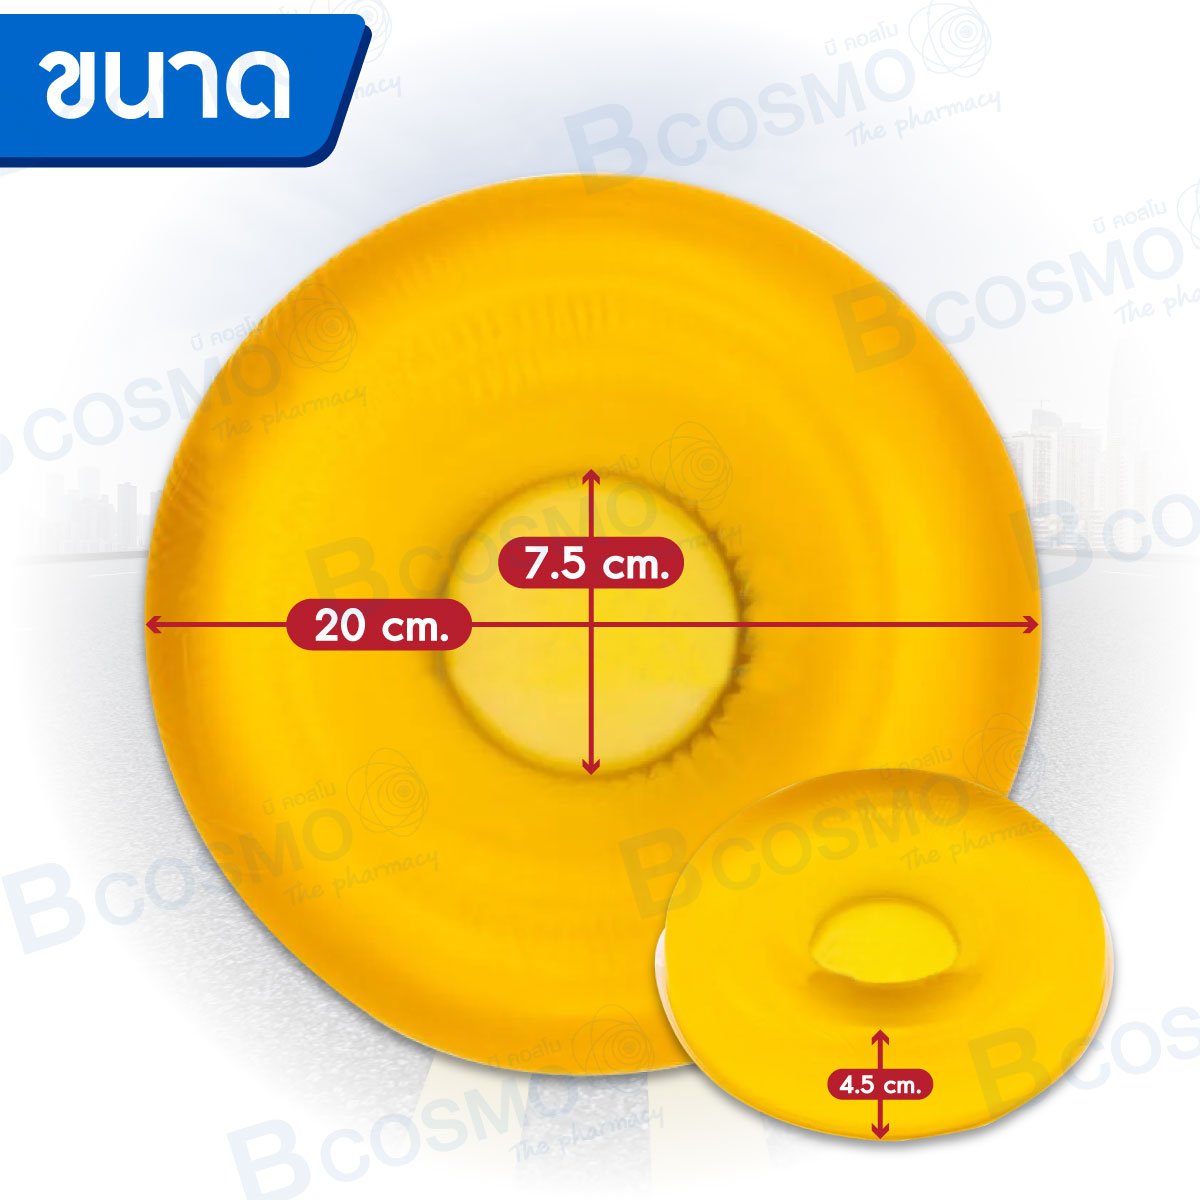 เจลรองศีรษะ (Closed Head Ring) Sung kwang สีเหลือง 20x7.5x4.5 cm.